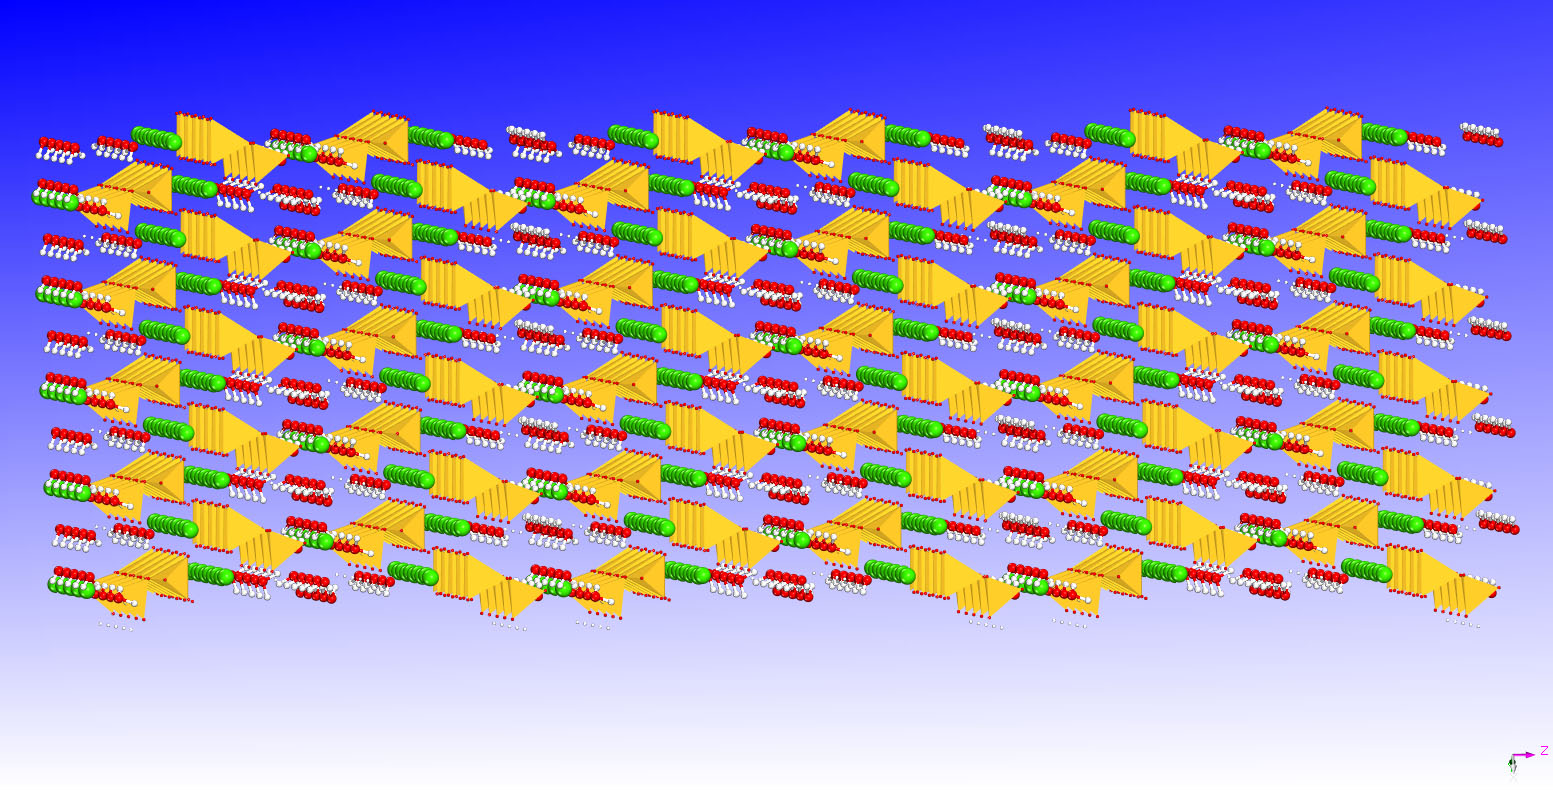 Vergrösserte Ansicht: Eine Simulation von Zement, basierend auf einem Modell aus der cemff-Datenbank. Das Modell enthält Wasserstoff (weiss), Sauerstoff (rot), Silikat (gelb) und Kalzium (grün). (Bild: ETH Zürich)